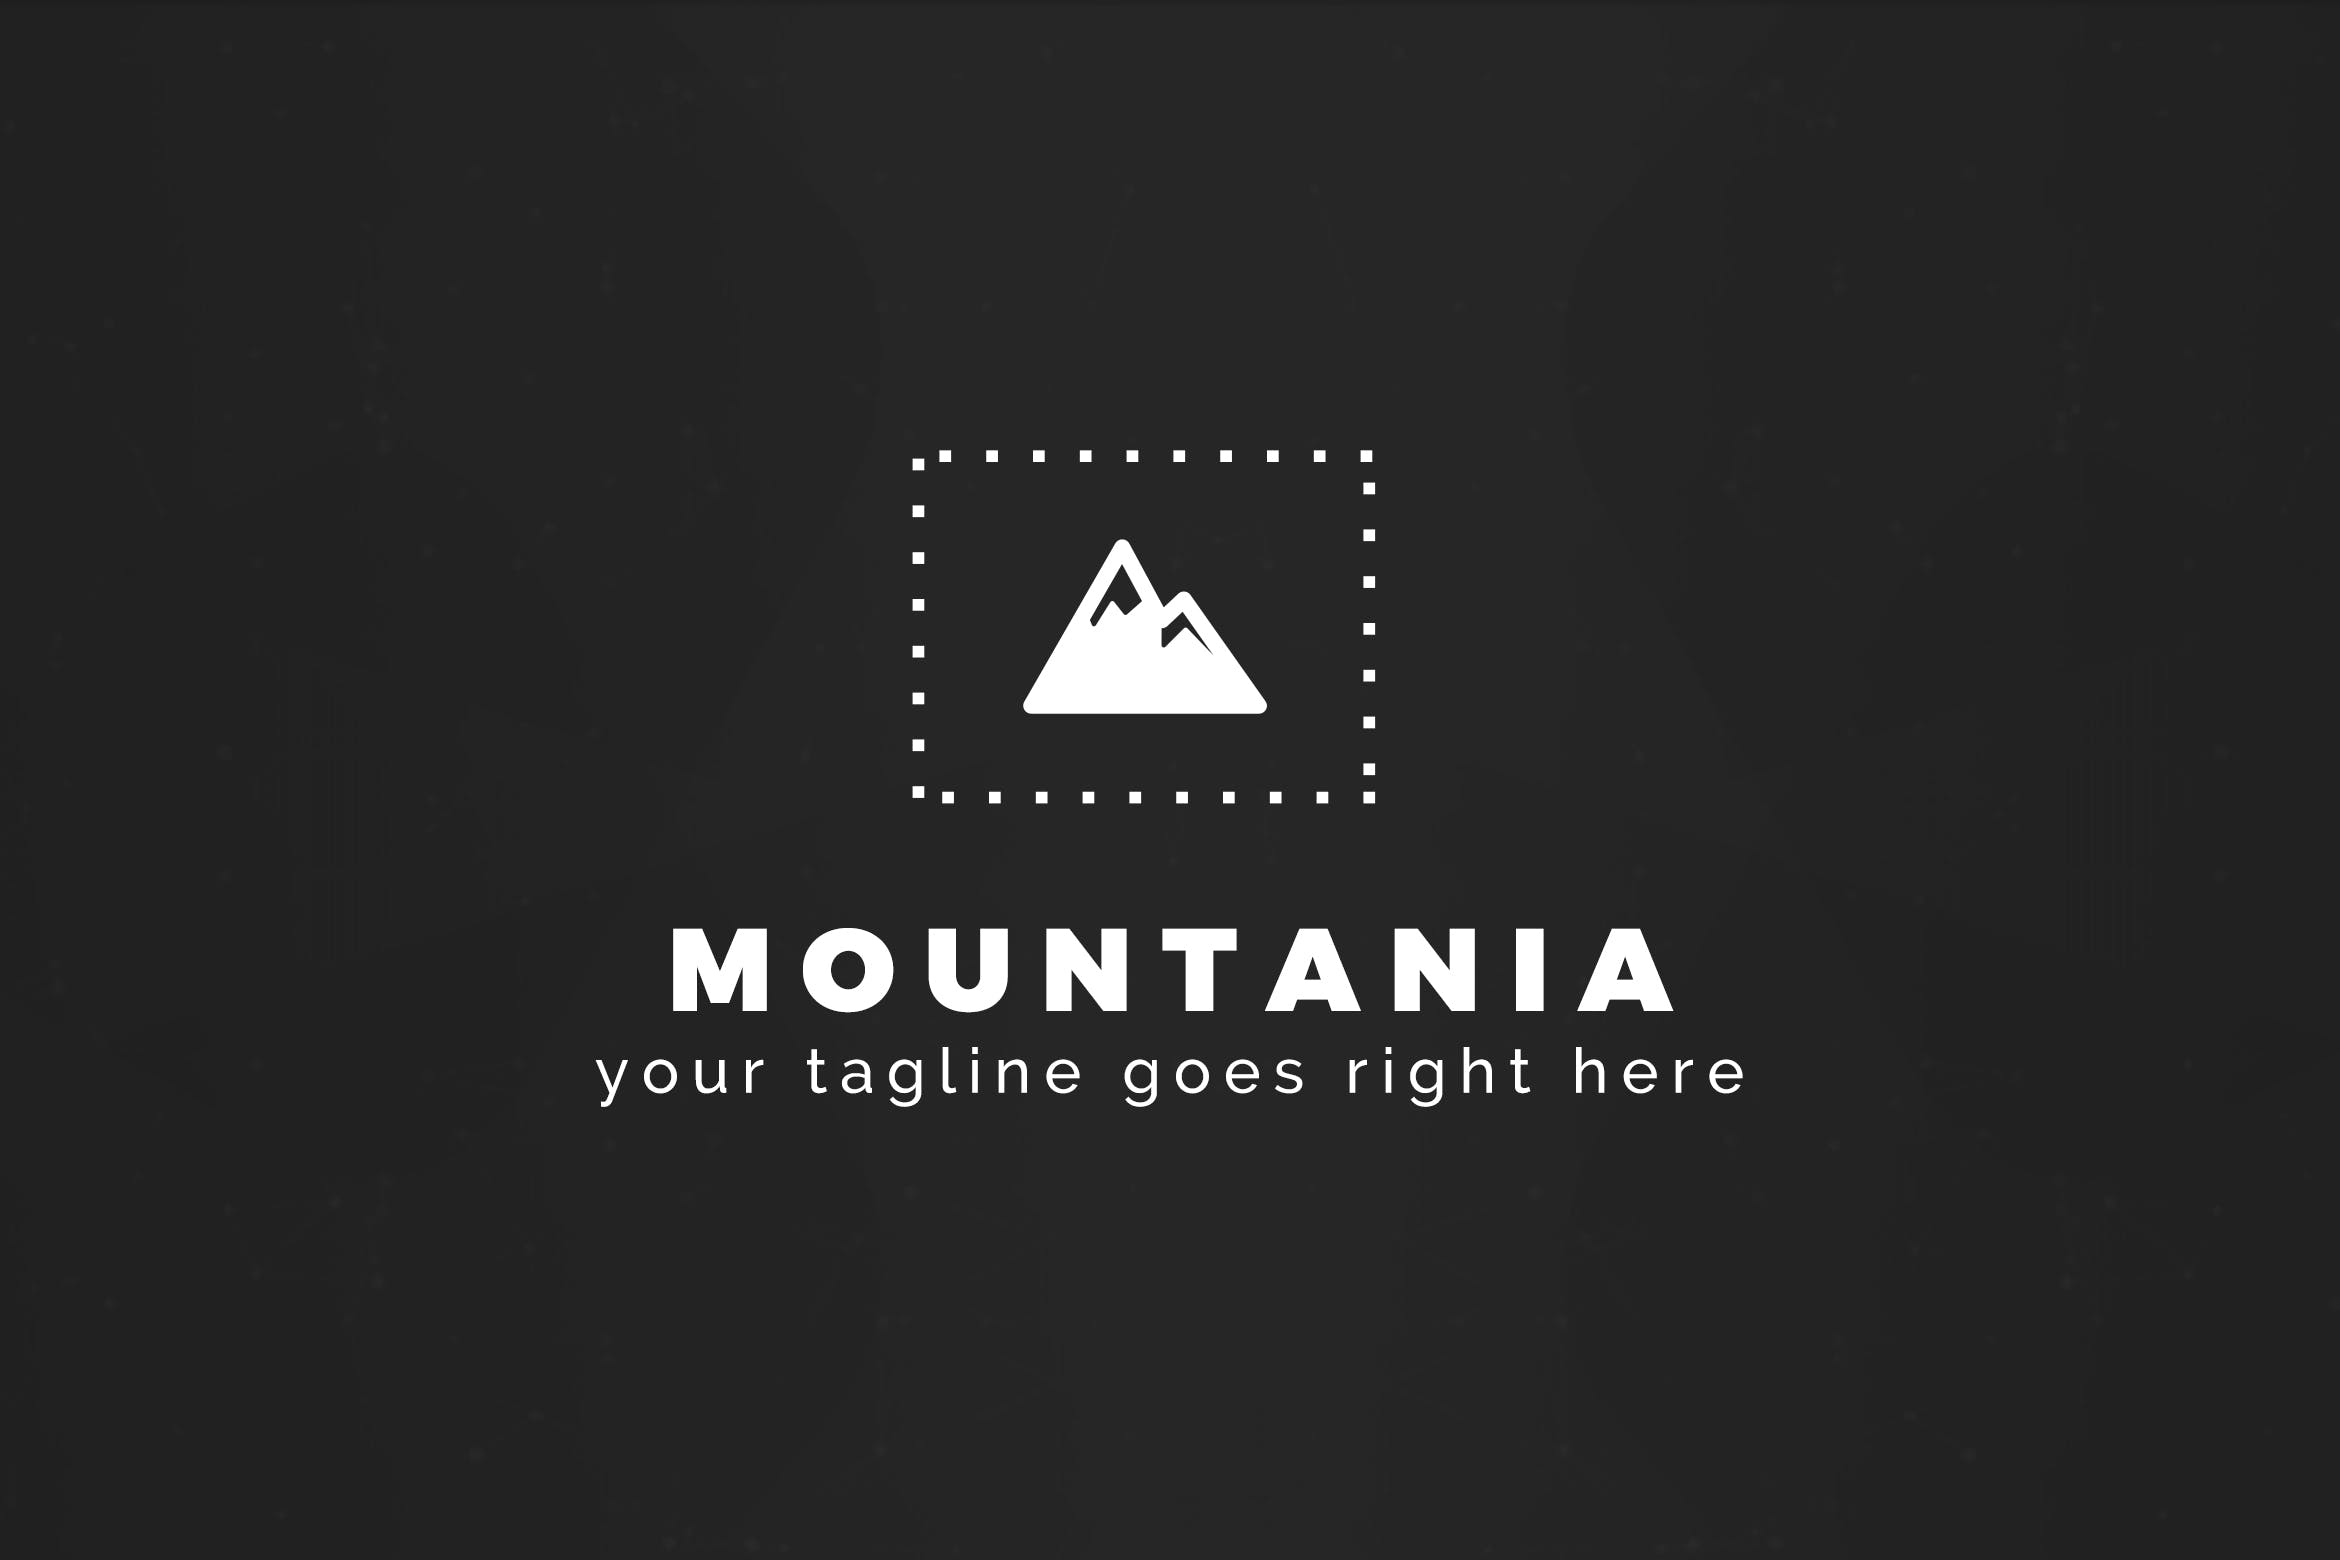 户外运动品牌山岭图形Logo设计大洋岛精选模板 Mountania – Premium Logo Template插图